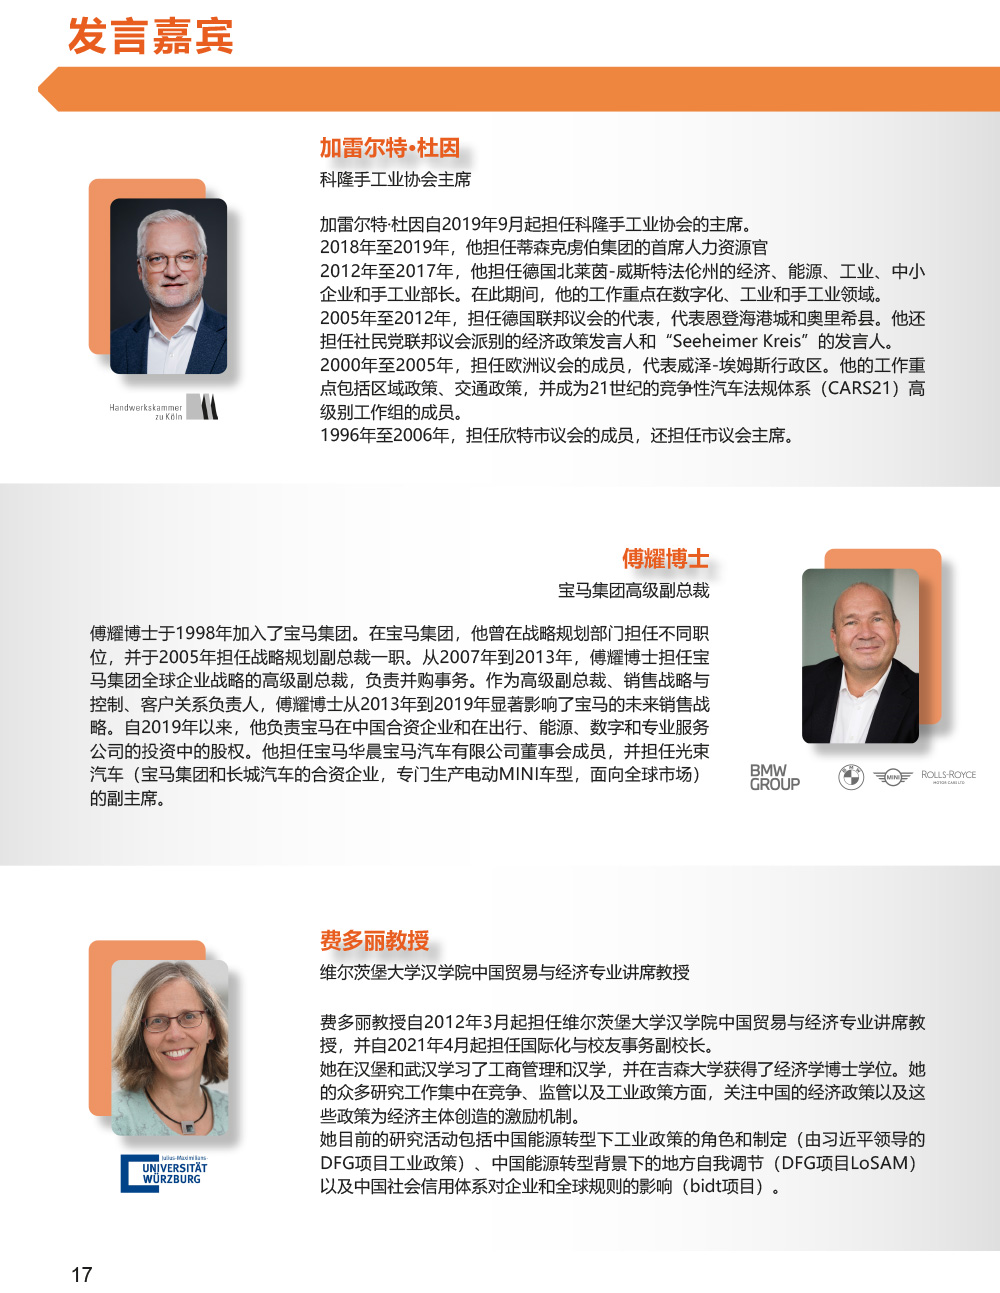 Programm der 10. Deutsch-Chinesische Wirtschaftskonferenz Seite 18